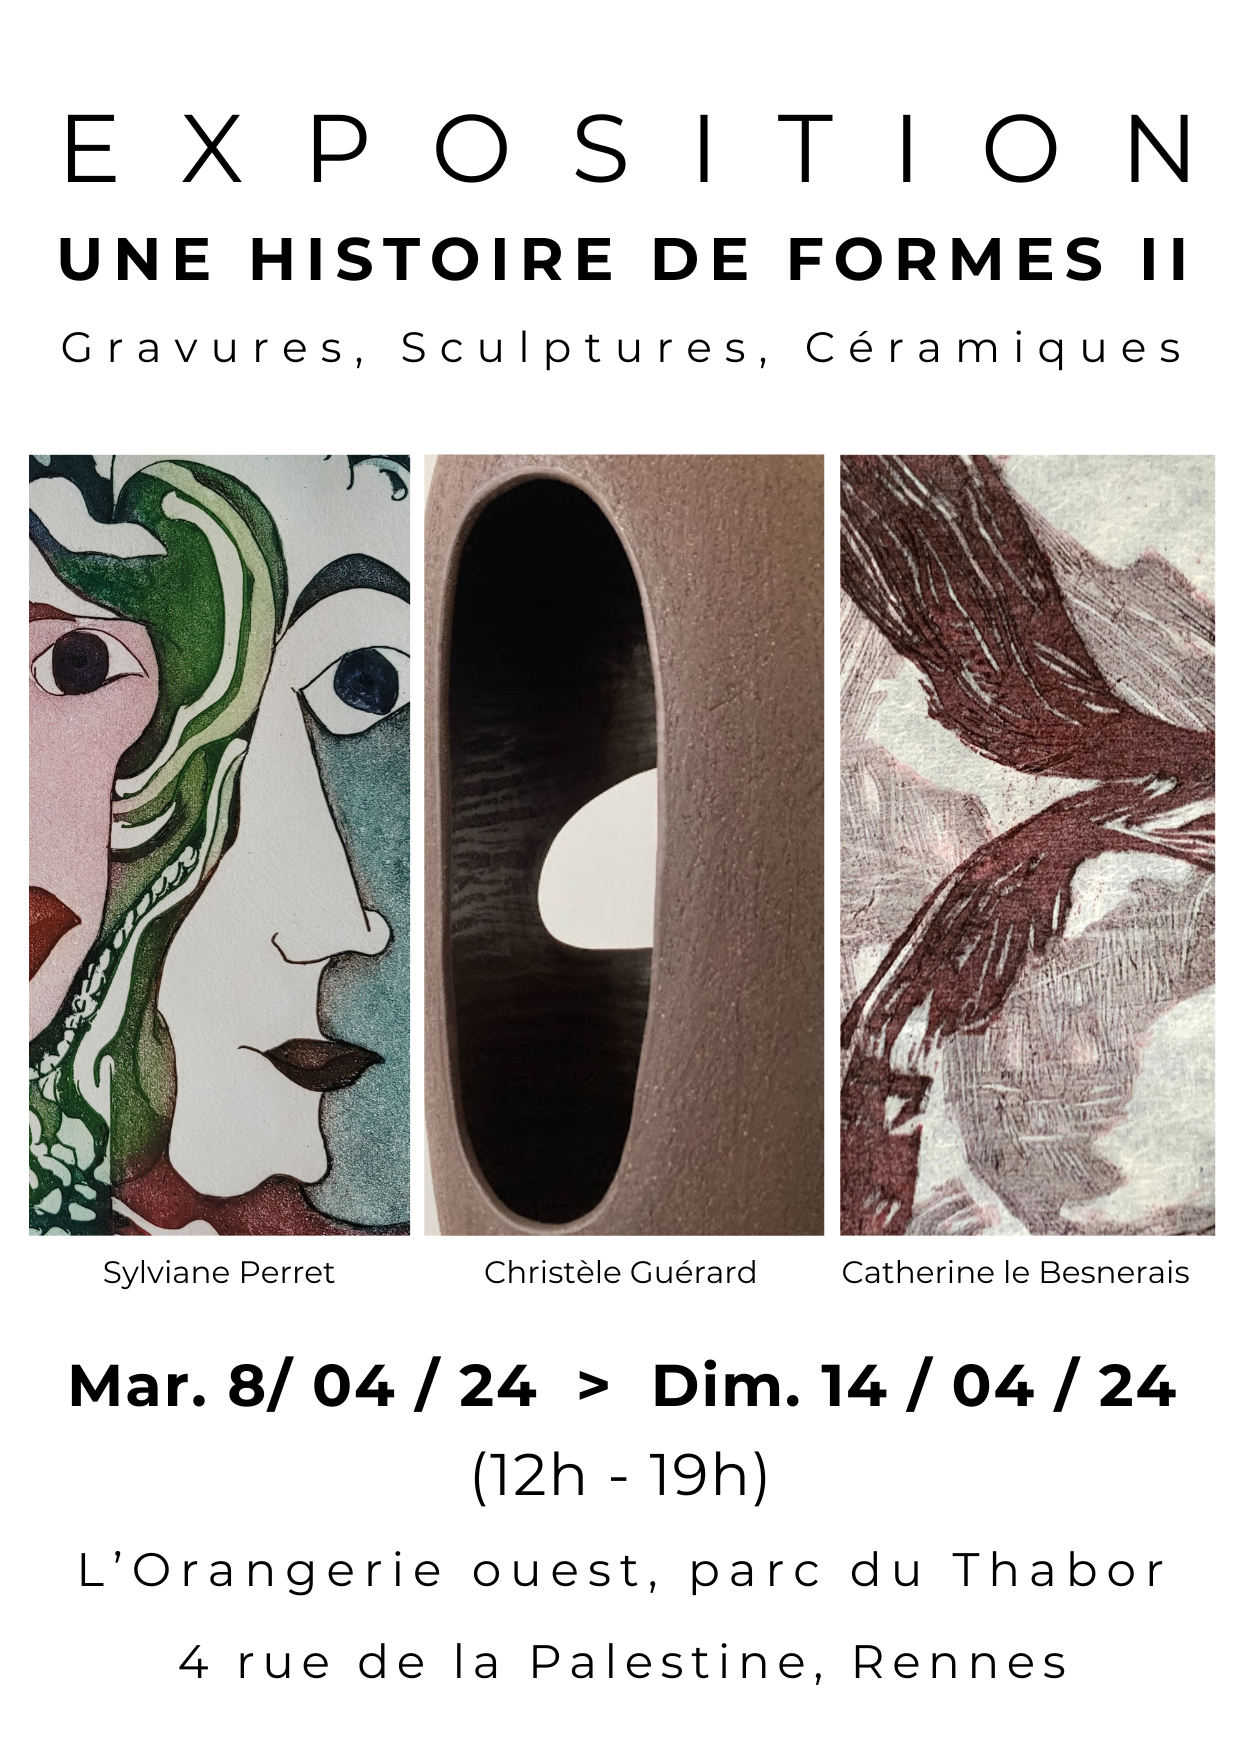 EXPOSITION RENNES "UNE HISTOIRE DE FORMES II", 9 >14 avril